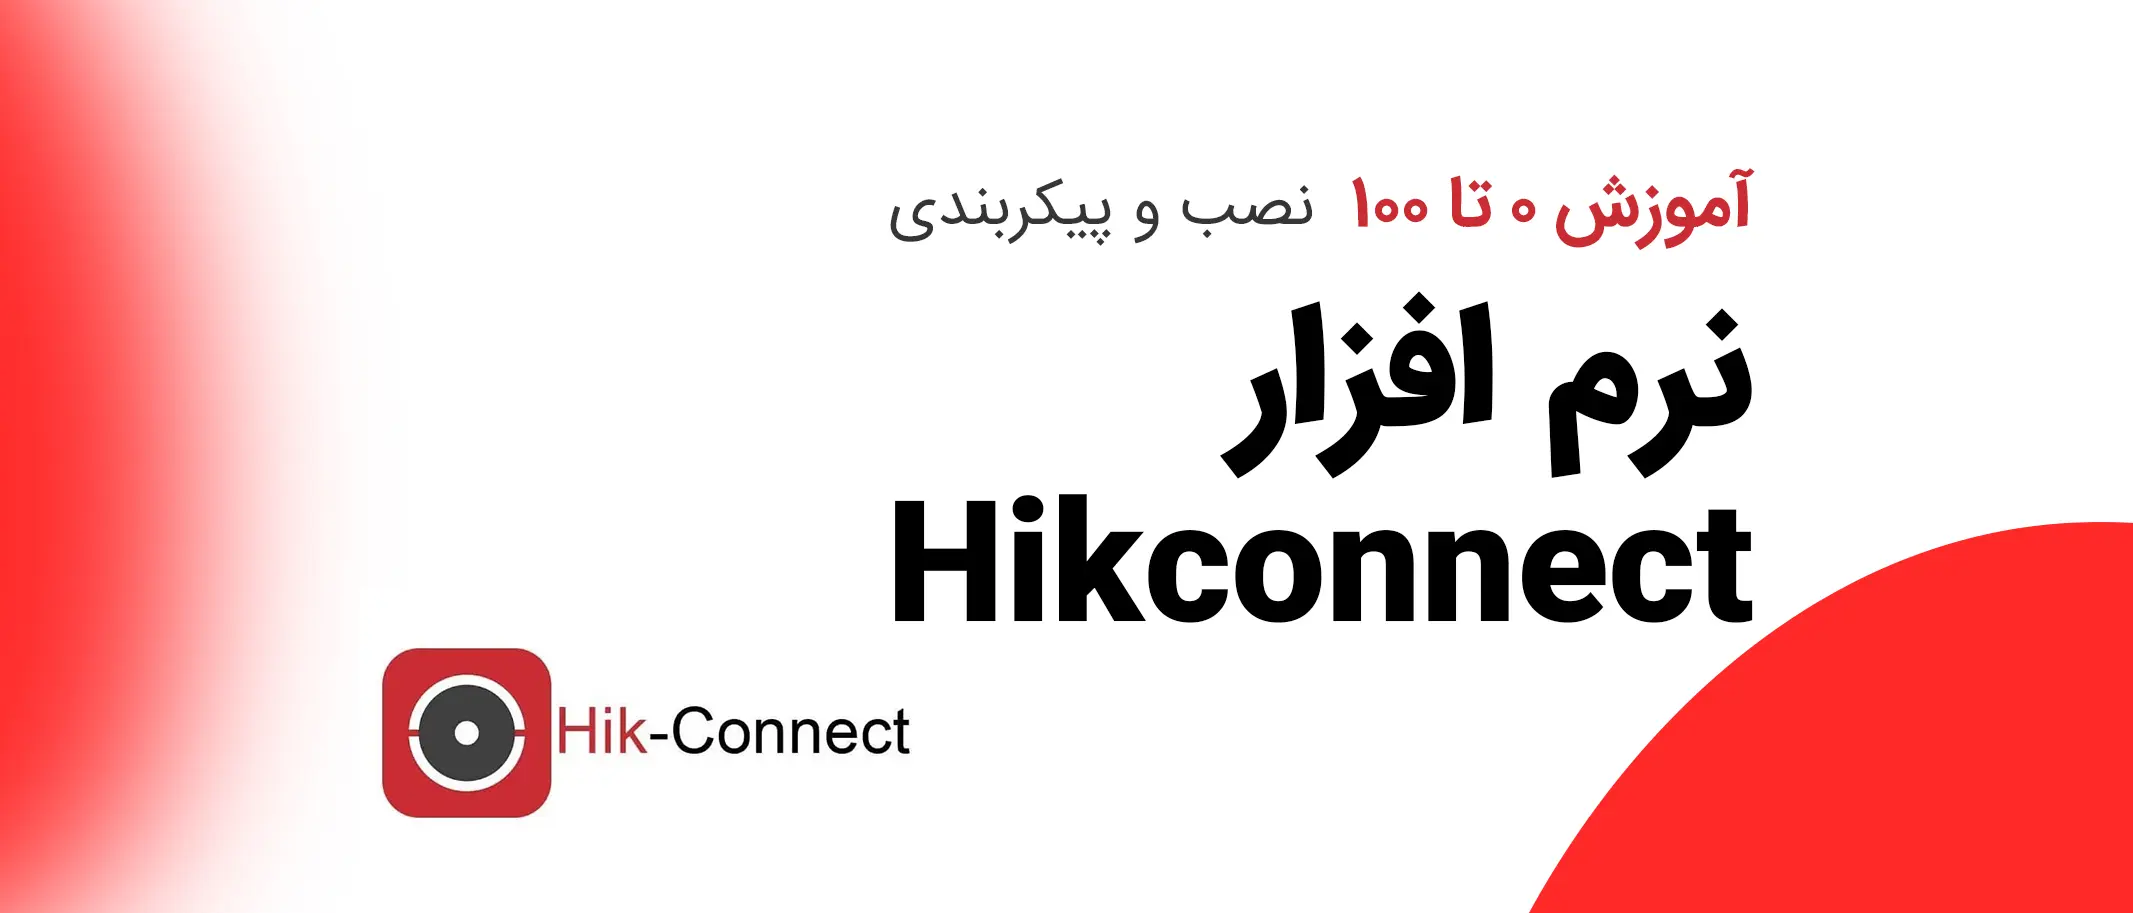 مقاله آموزش 0 تا 100 نصب و پیکربندی نرم افزار Hikconnect